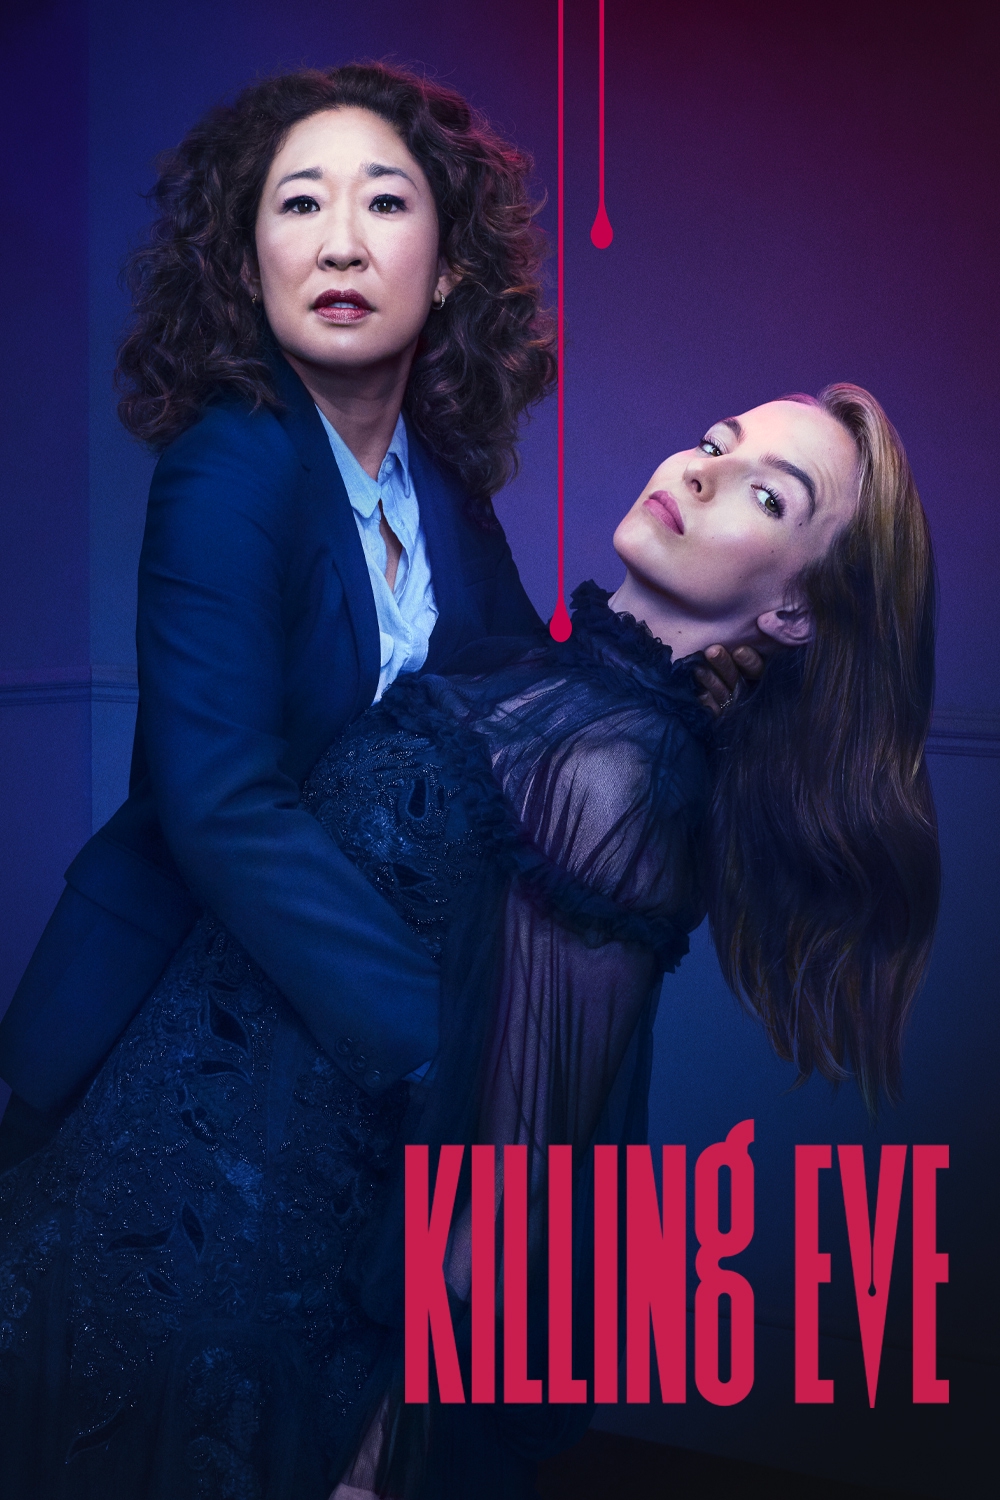 watch killing eve season 3 online free